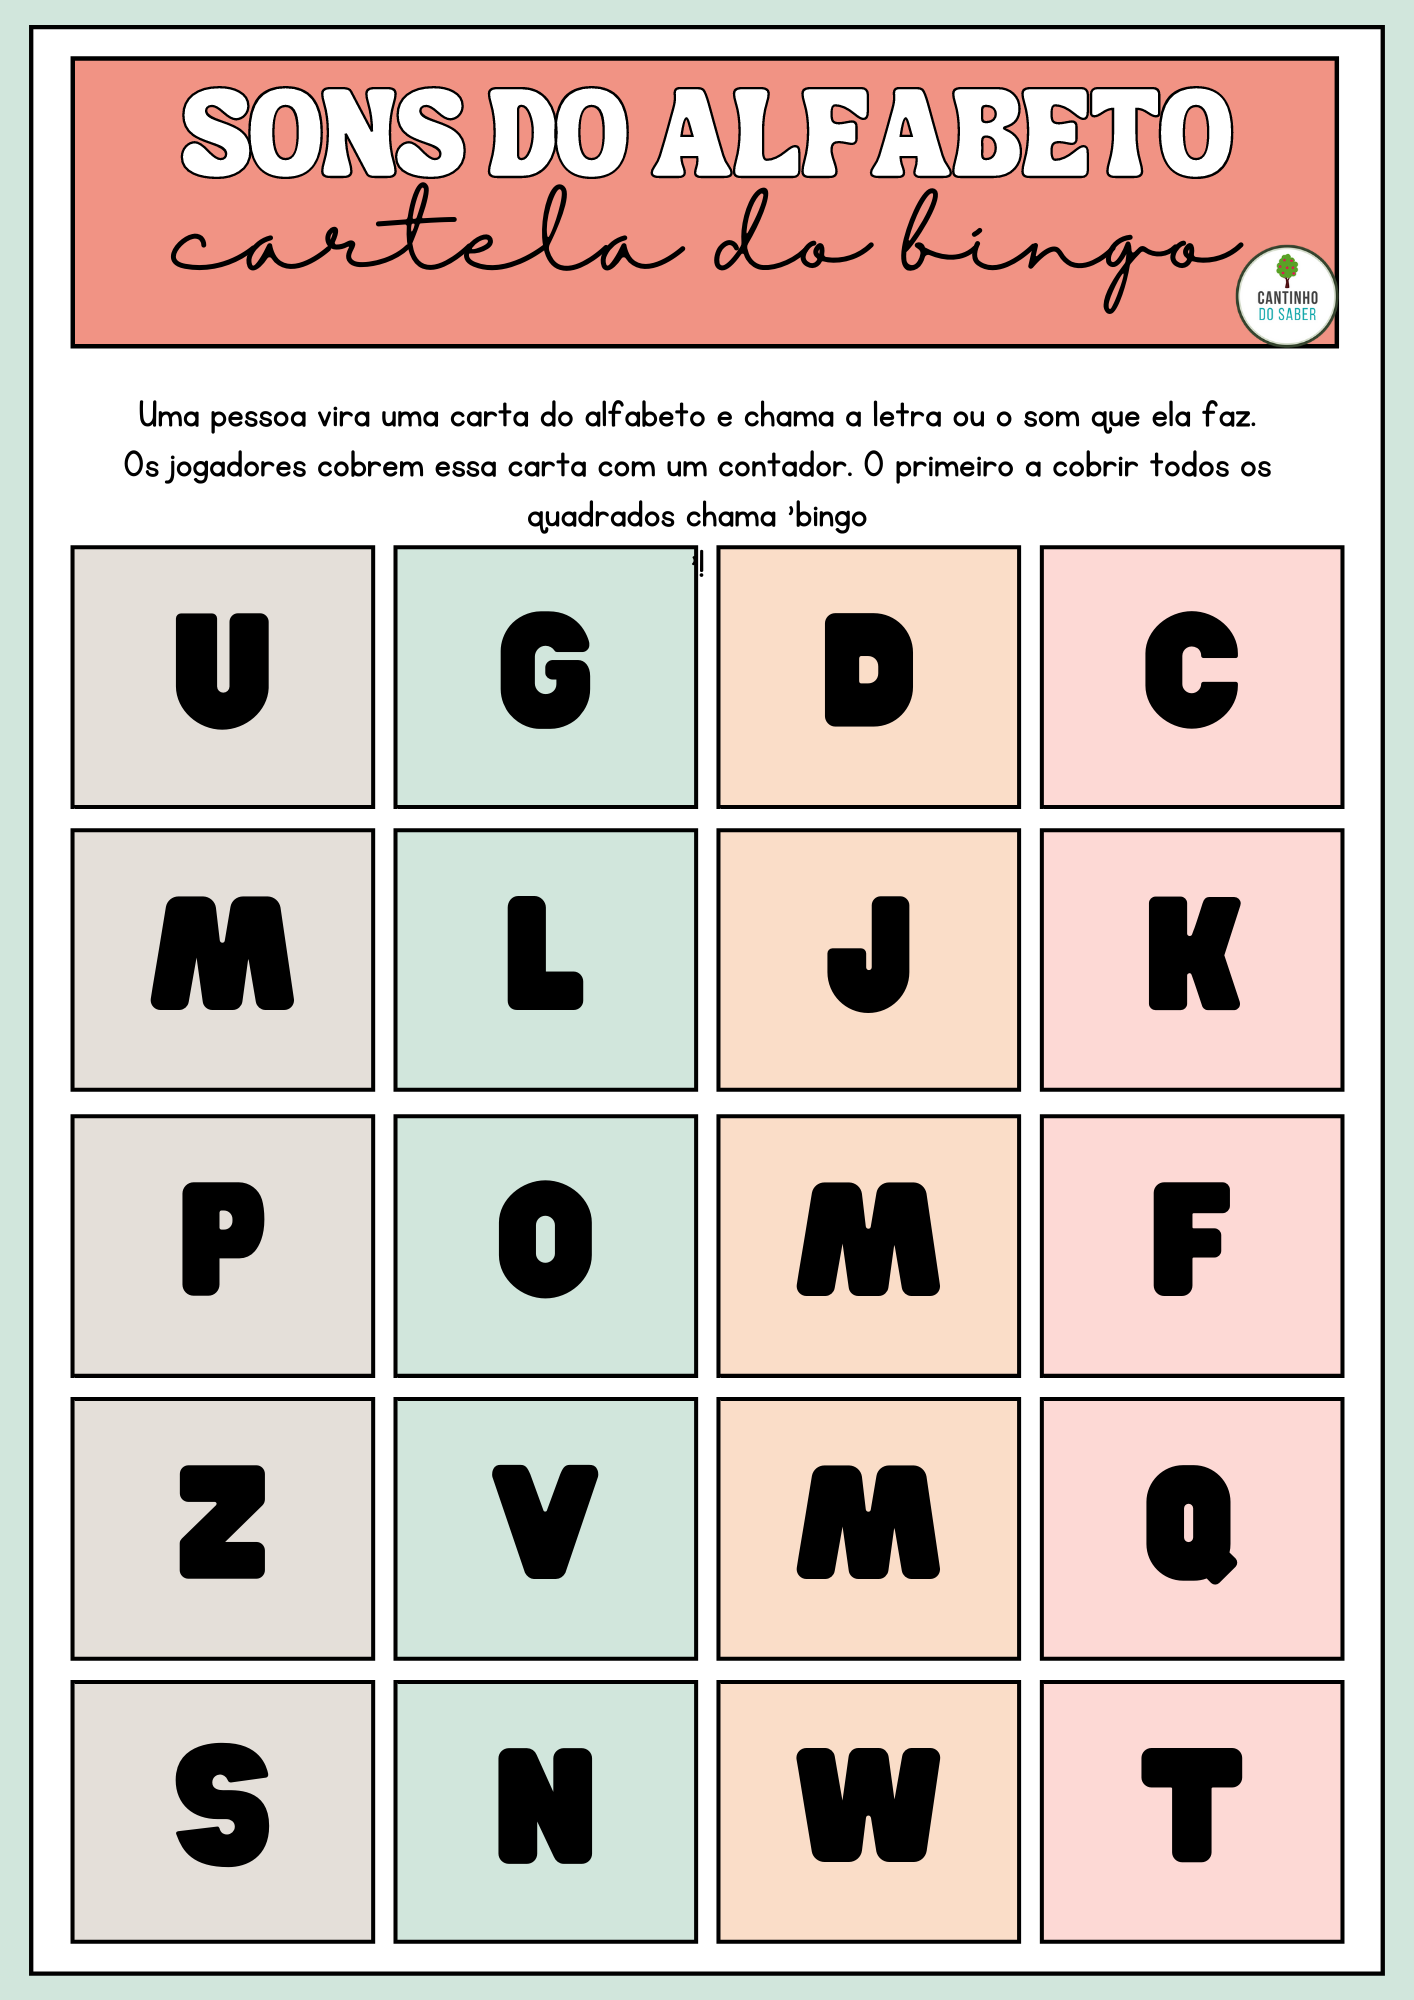 Cartela De Bingo Dos Sons Do Alfabeto Para Imprimir